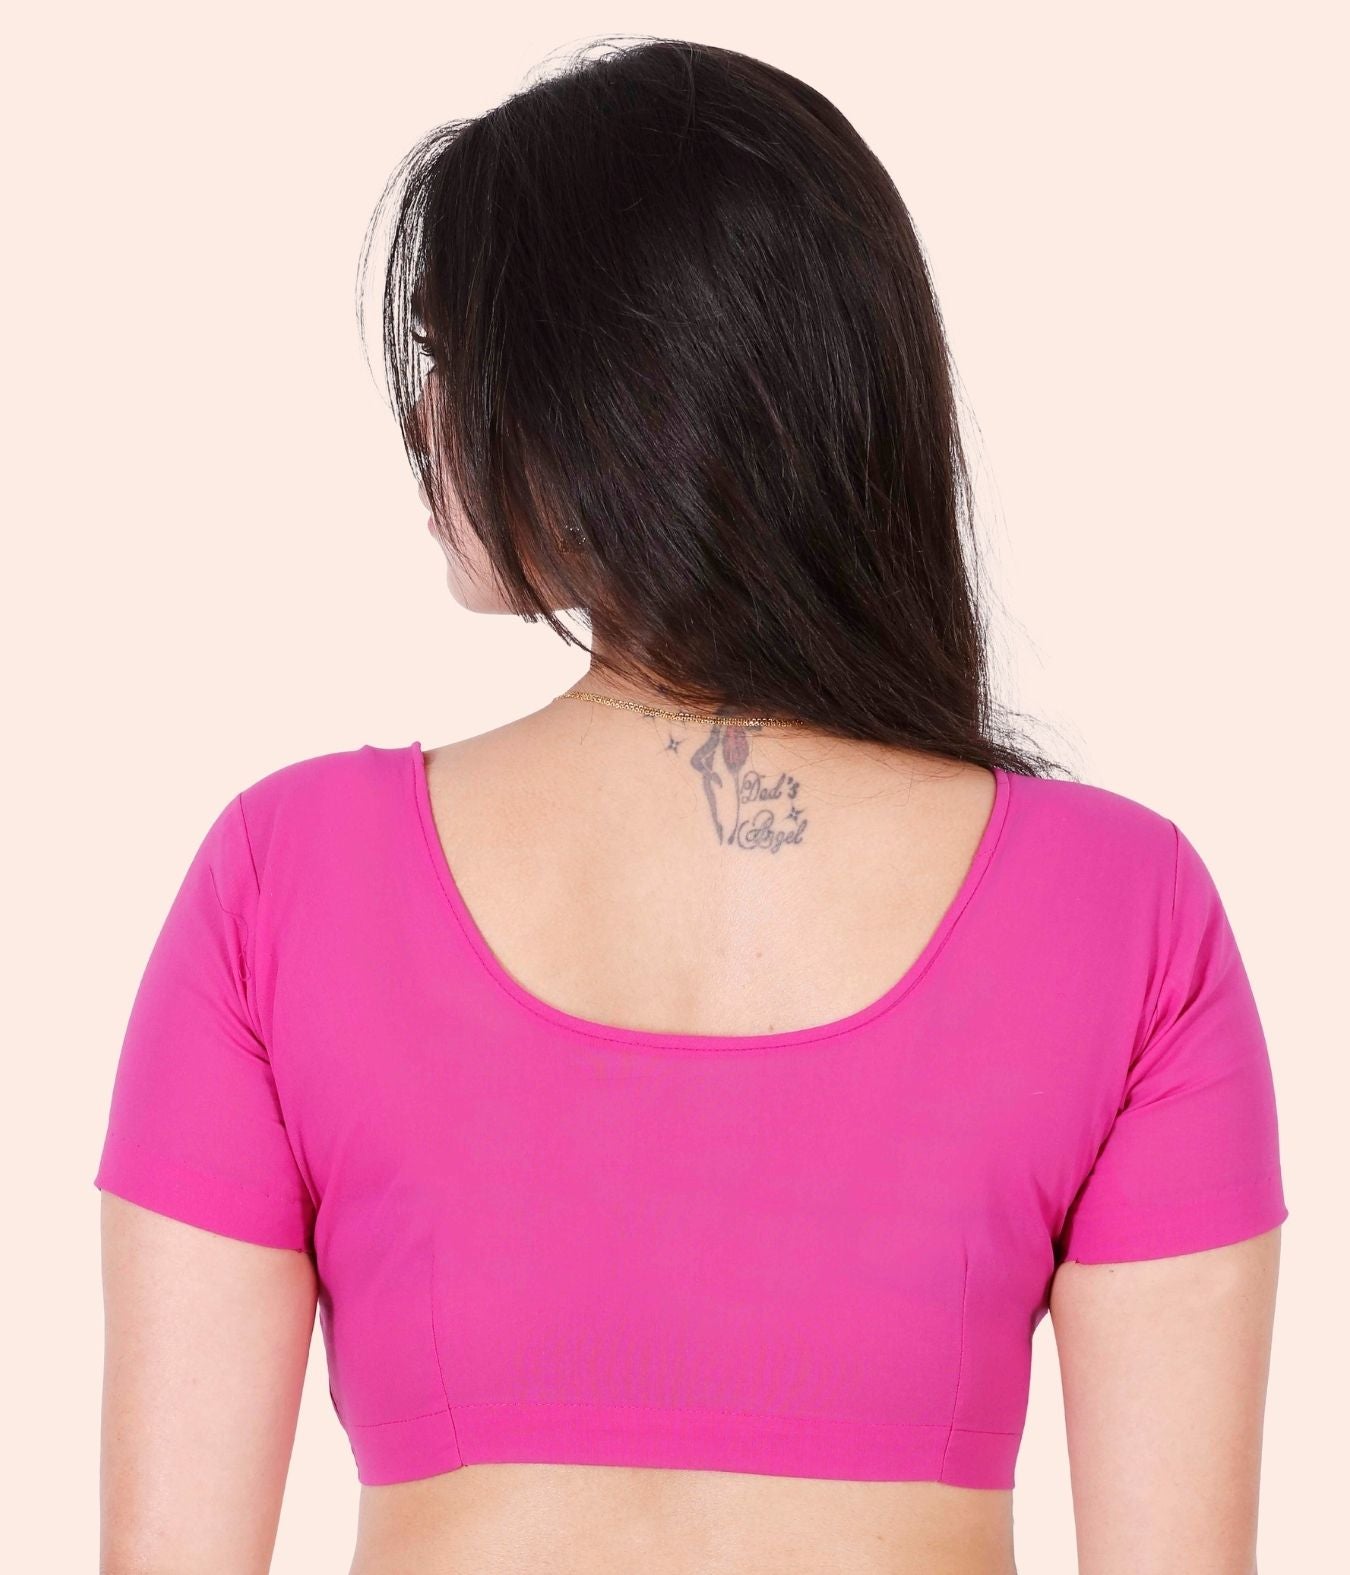 Jisb Pink blouse